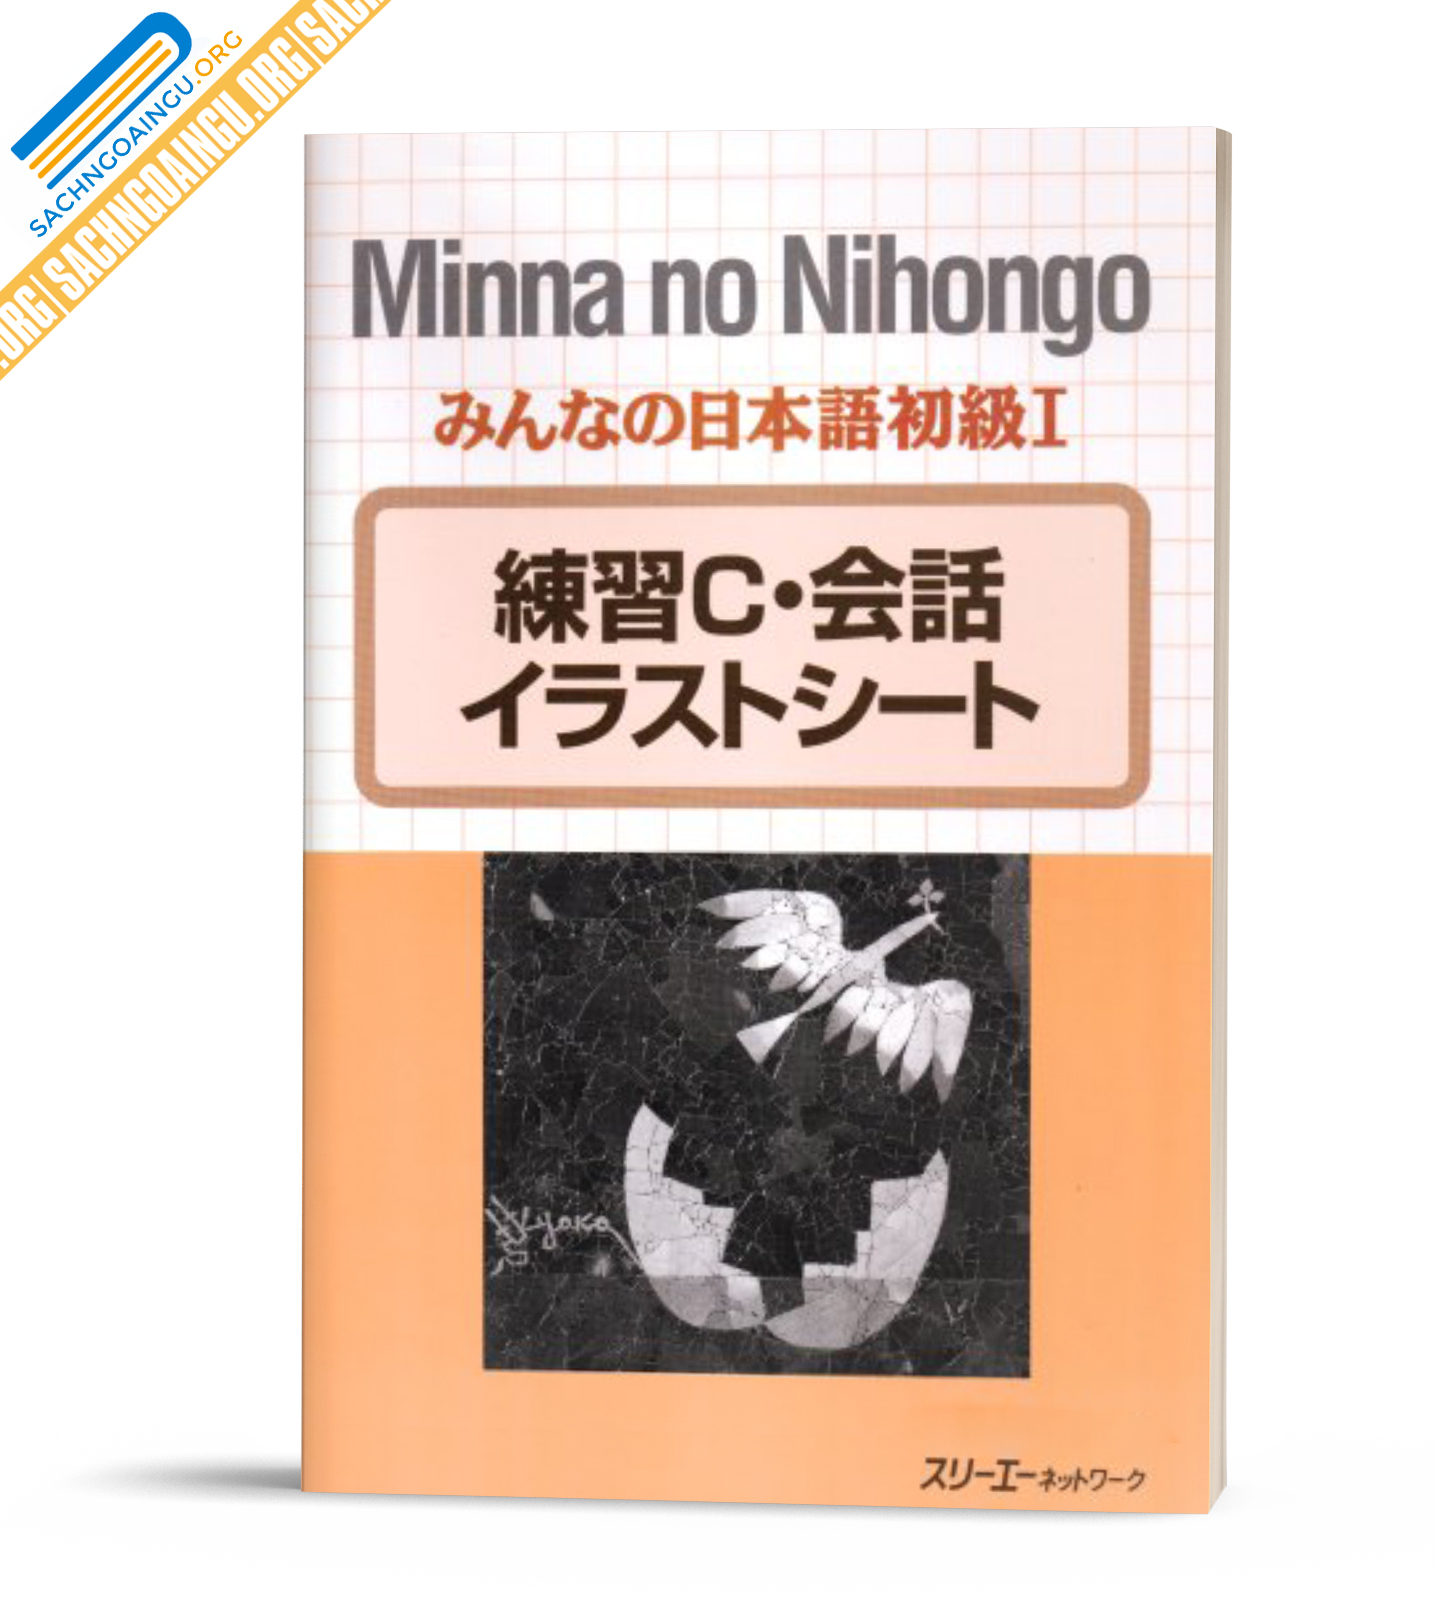 Minna No Nihongo Sơ Cấp 1 Renshu C Kaiwa Sach Tiếng Nhật